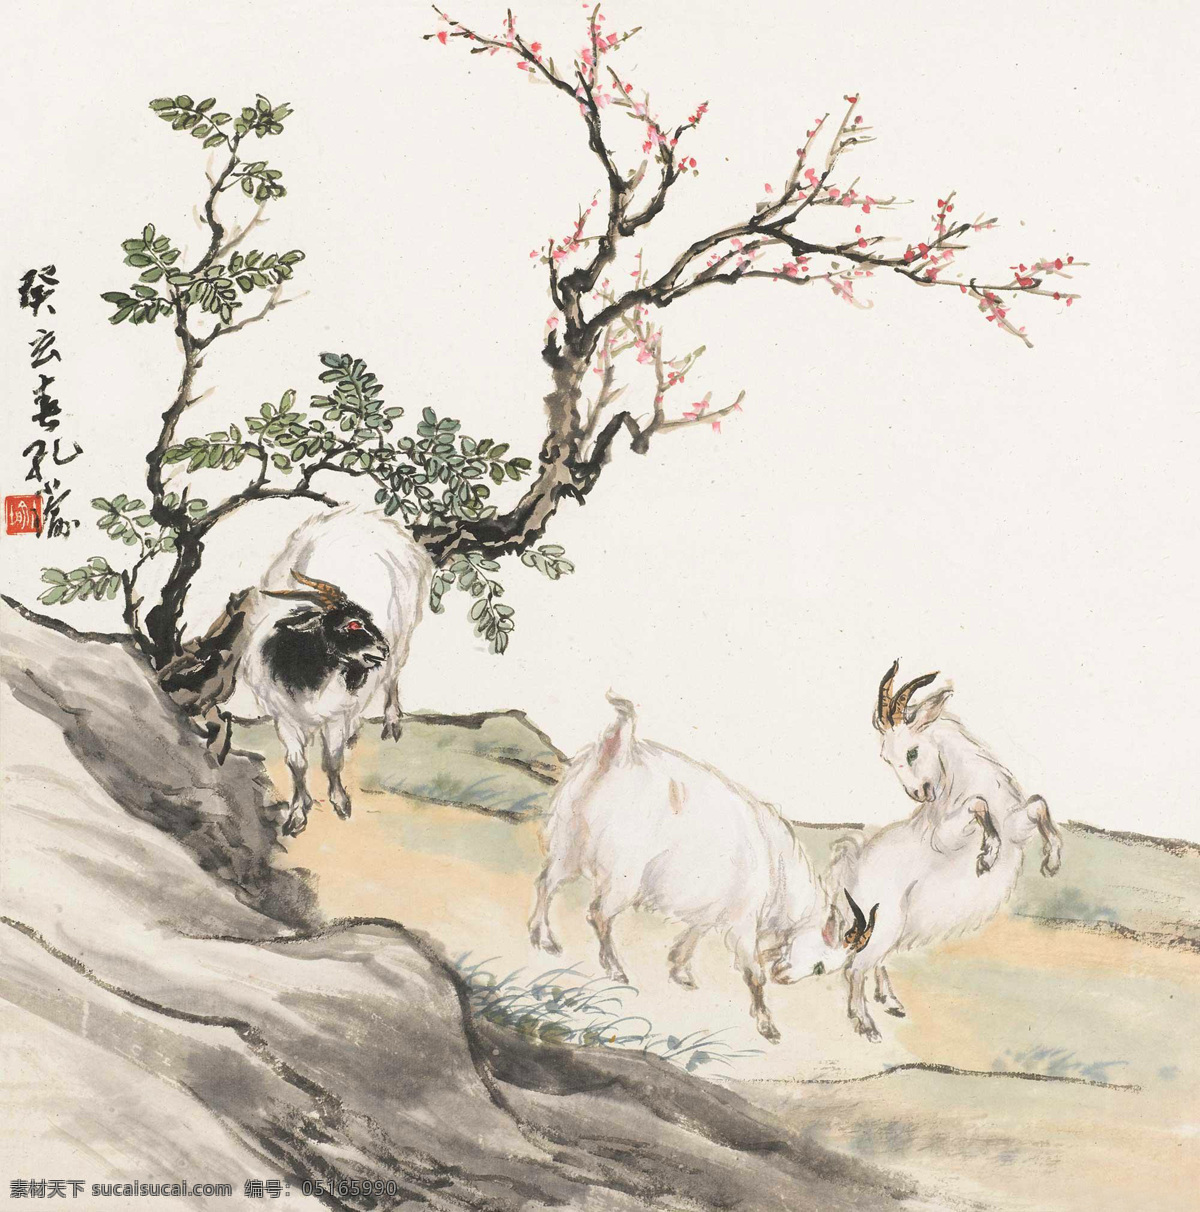 三羊 孔小瑜 国画 羊 山羊 三羊开泰 中国画 绘画书法 文化艺术